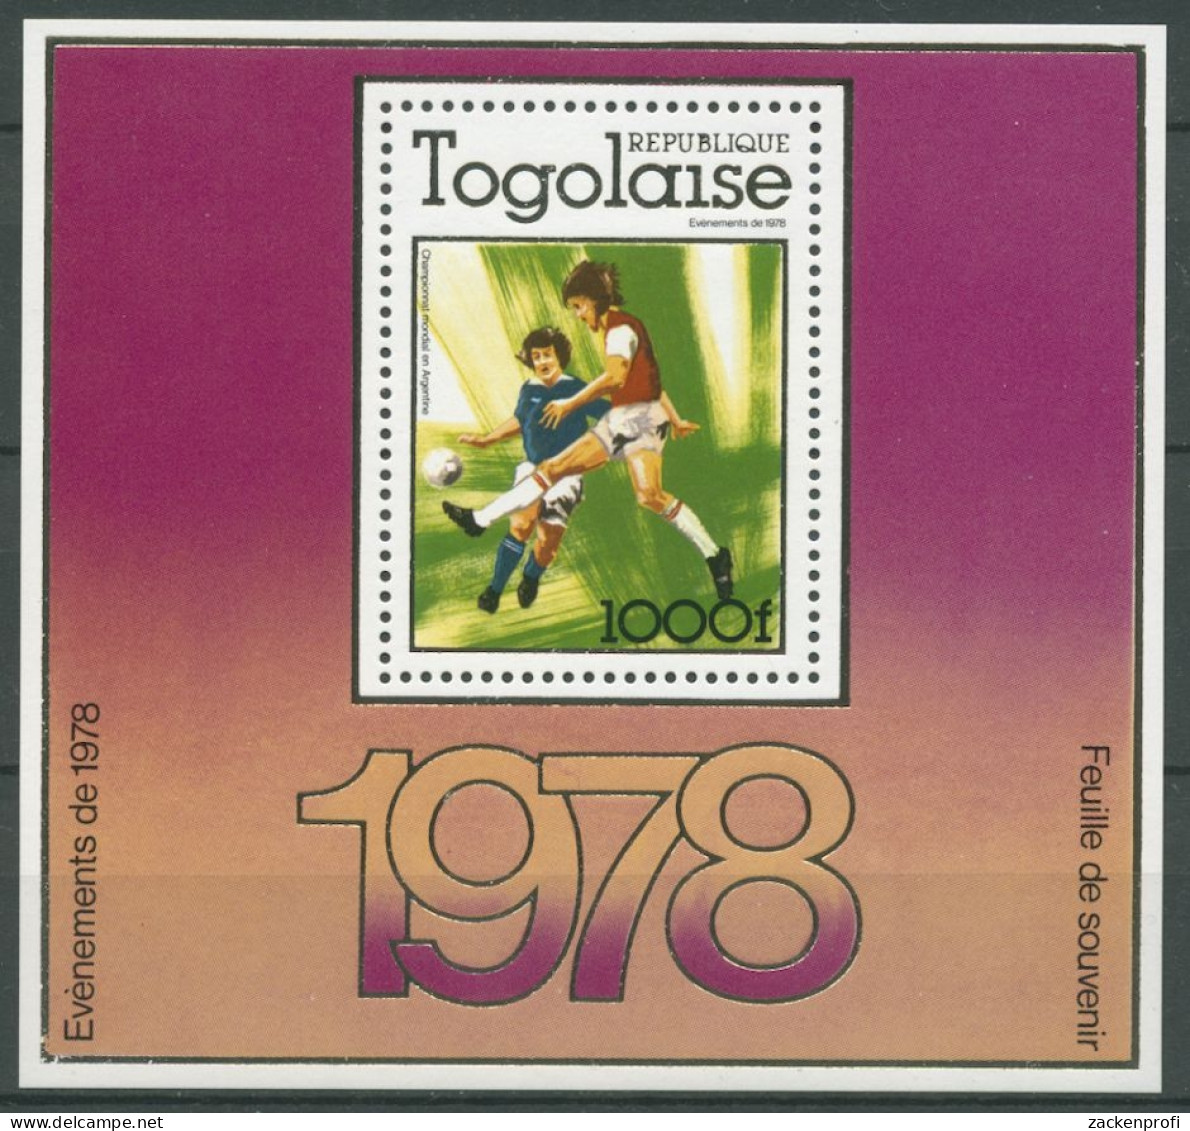 Togo 1978 Fußball-WM In Argentinien Spielszene Block 128 A Postfrisch (C27136) - Togo (1960-...)